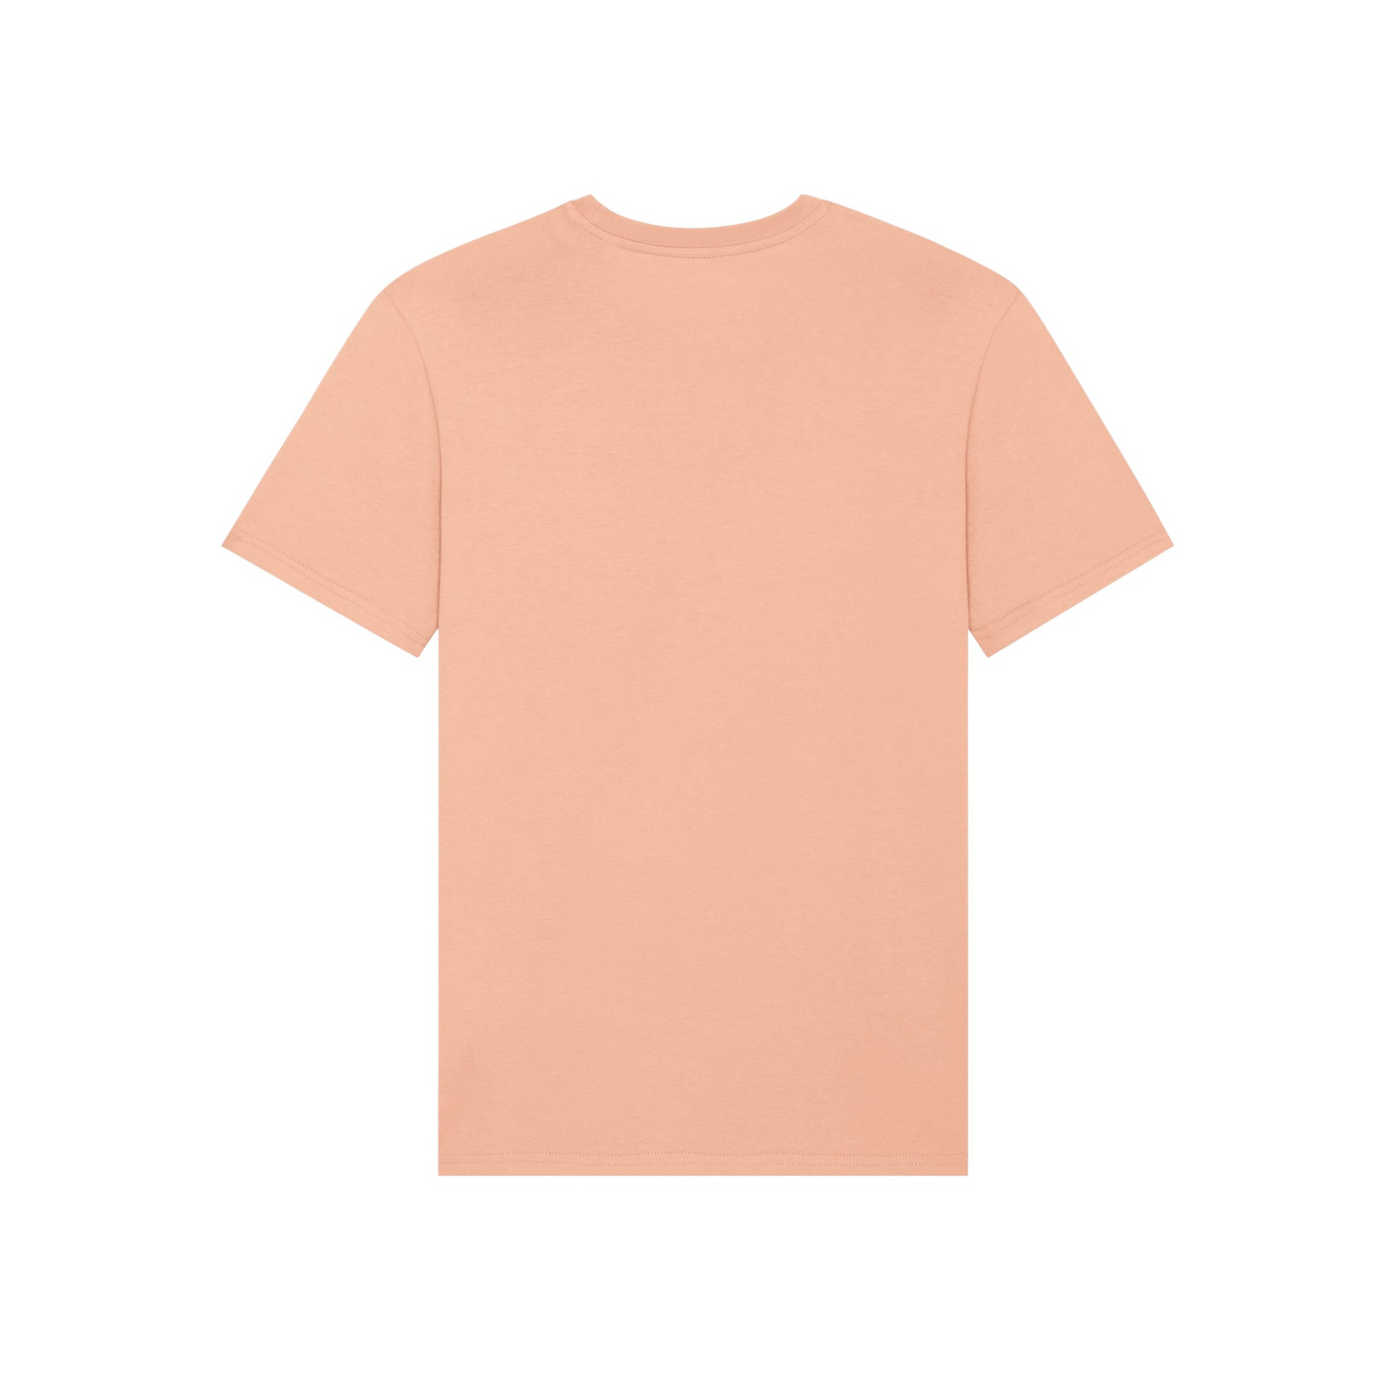 Shirt - FEARLESS. FEMALE. CYCLIST. - Peach